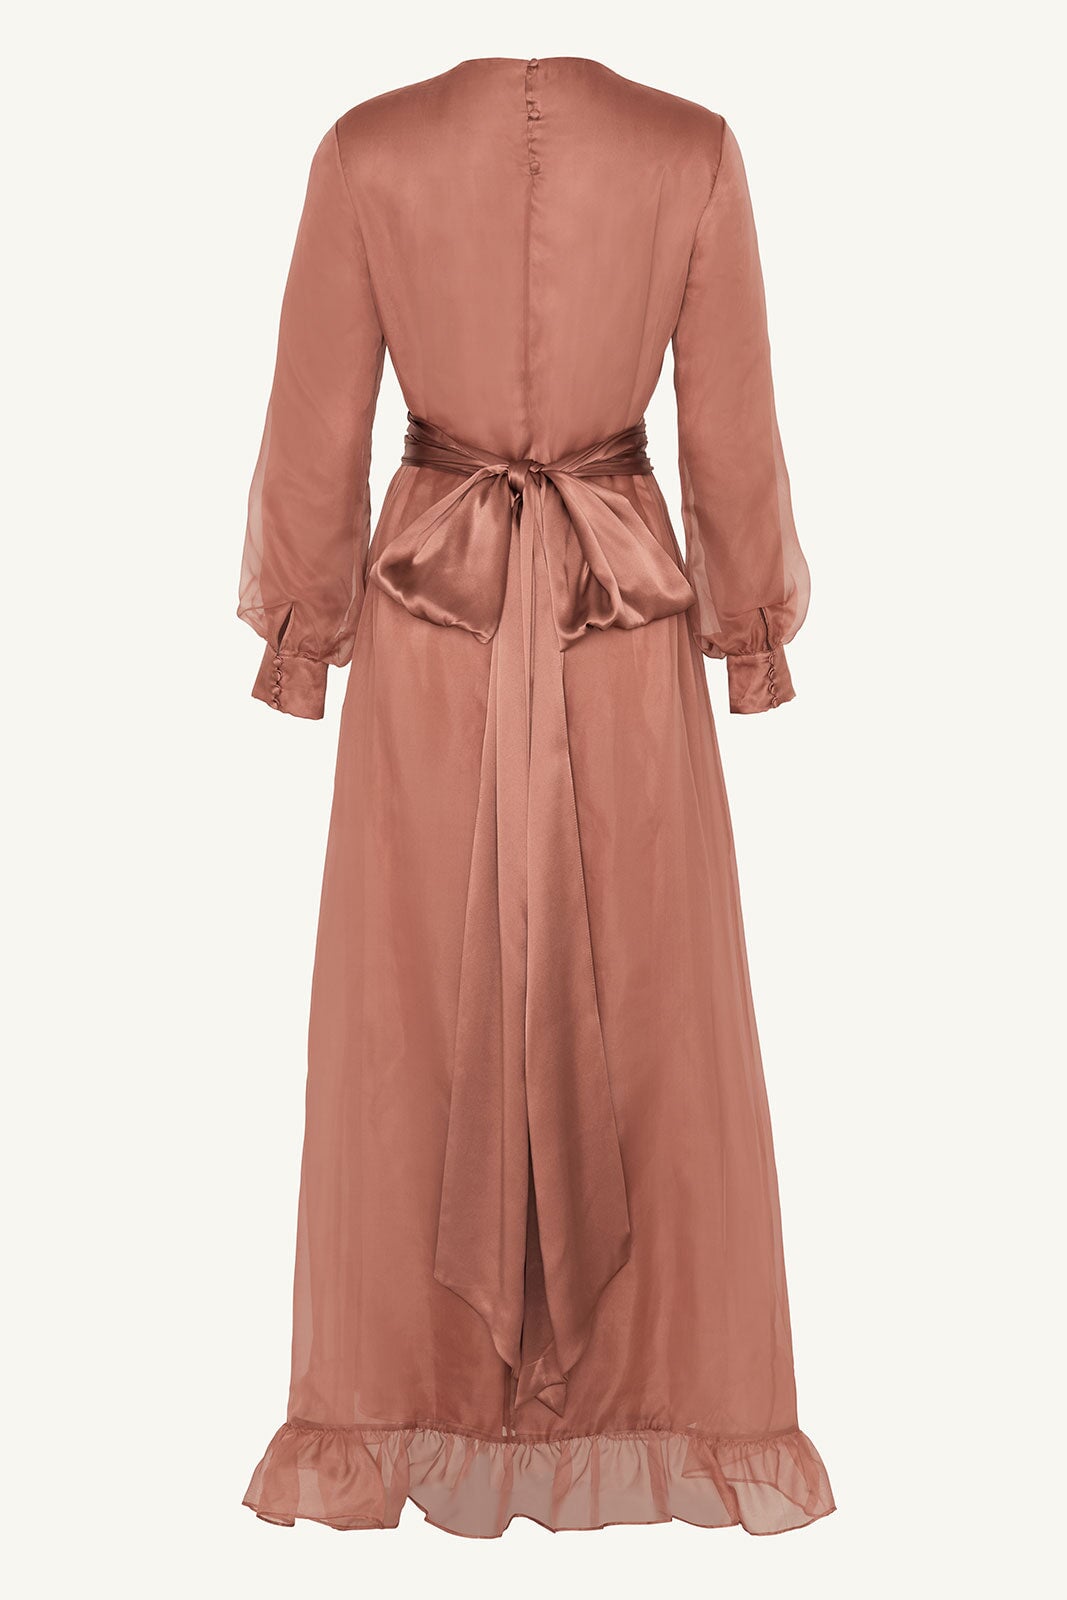 Silk Organza Ruffle Trim Maxi Dress - Cedar Wood Clothing Veiled 